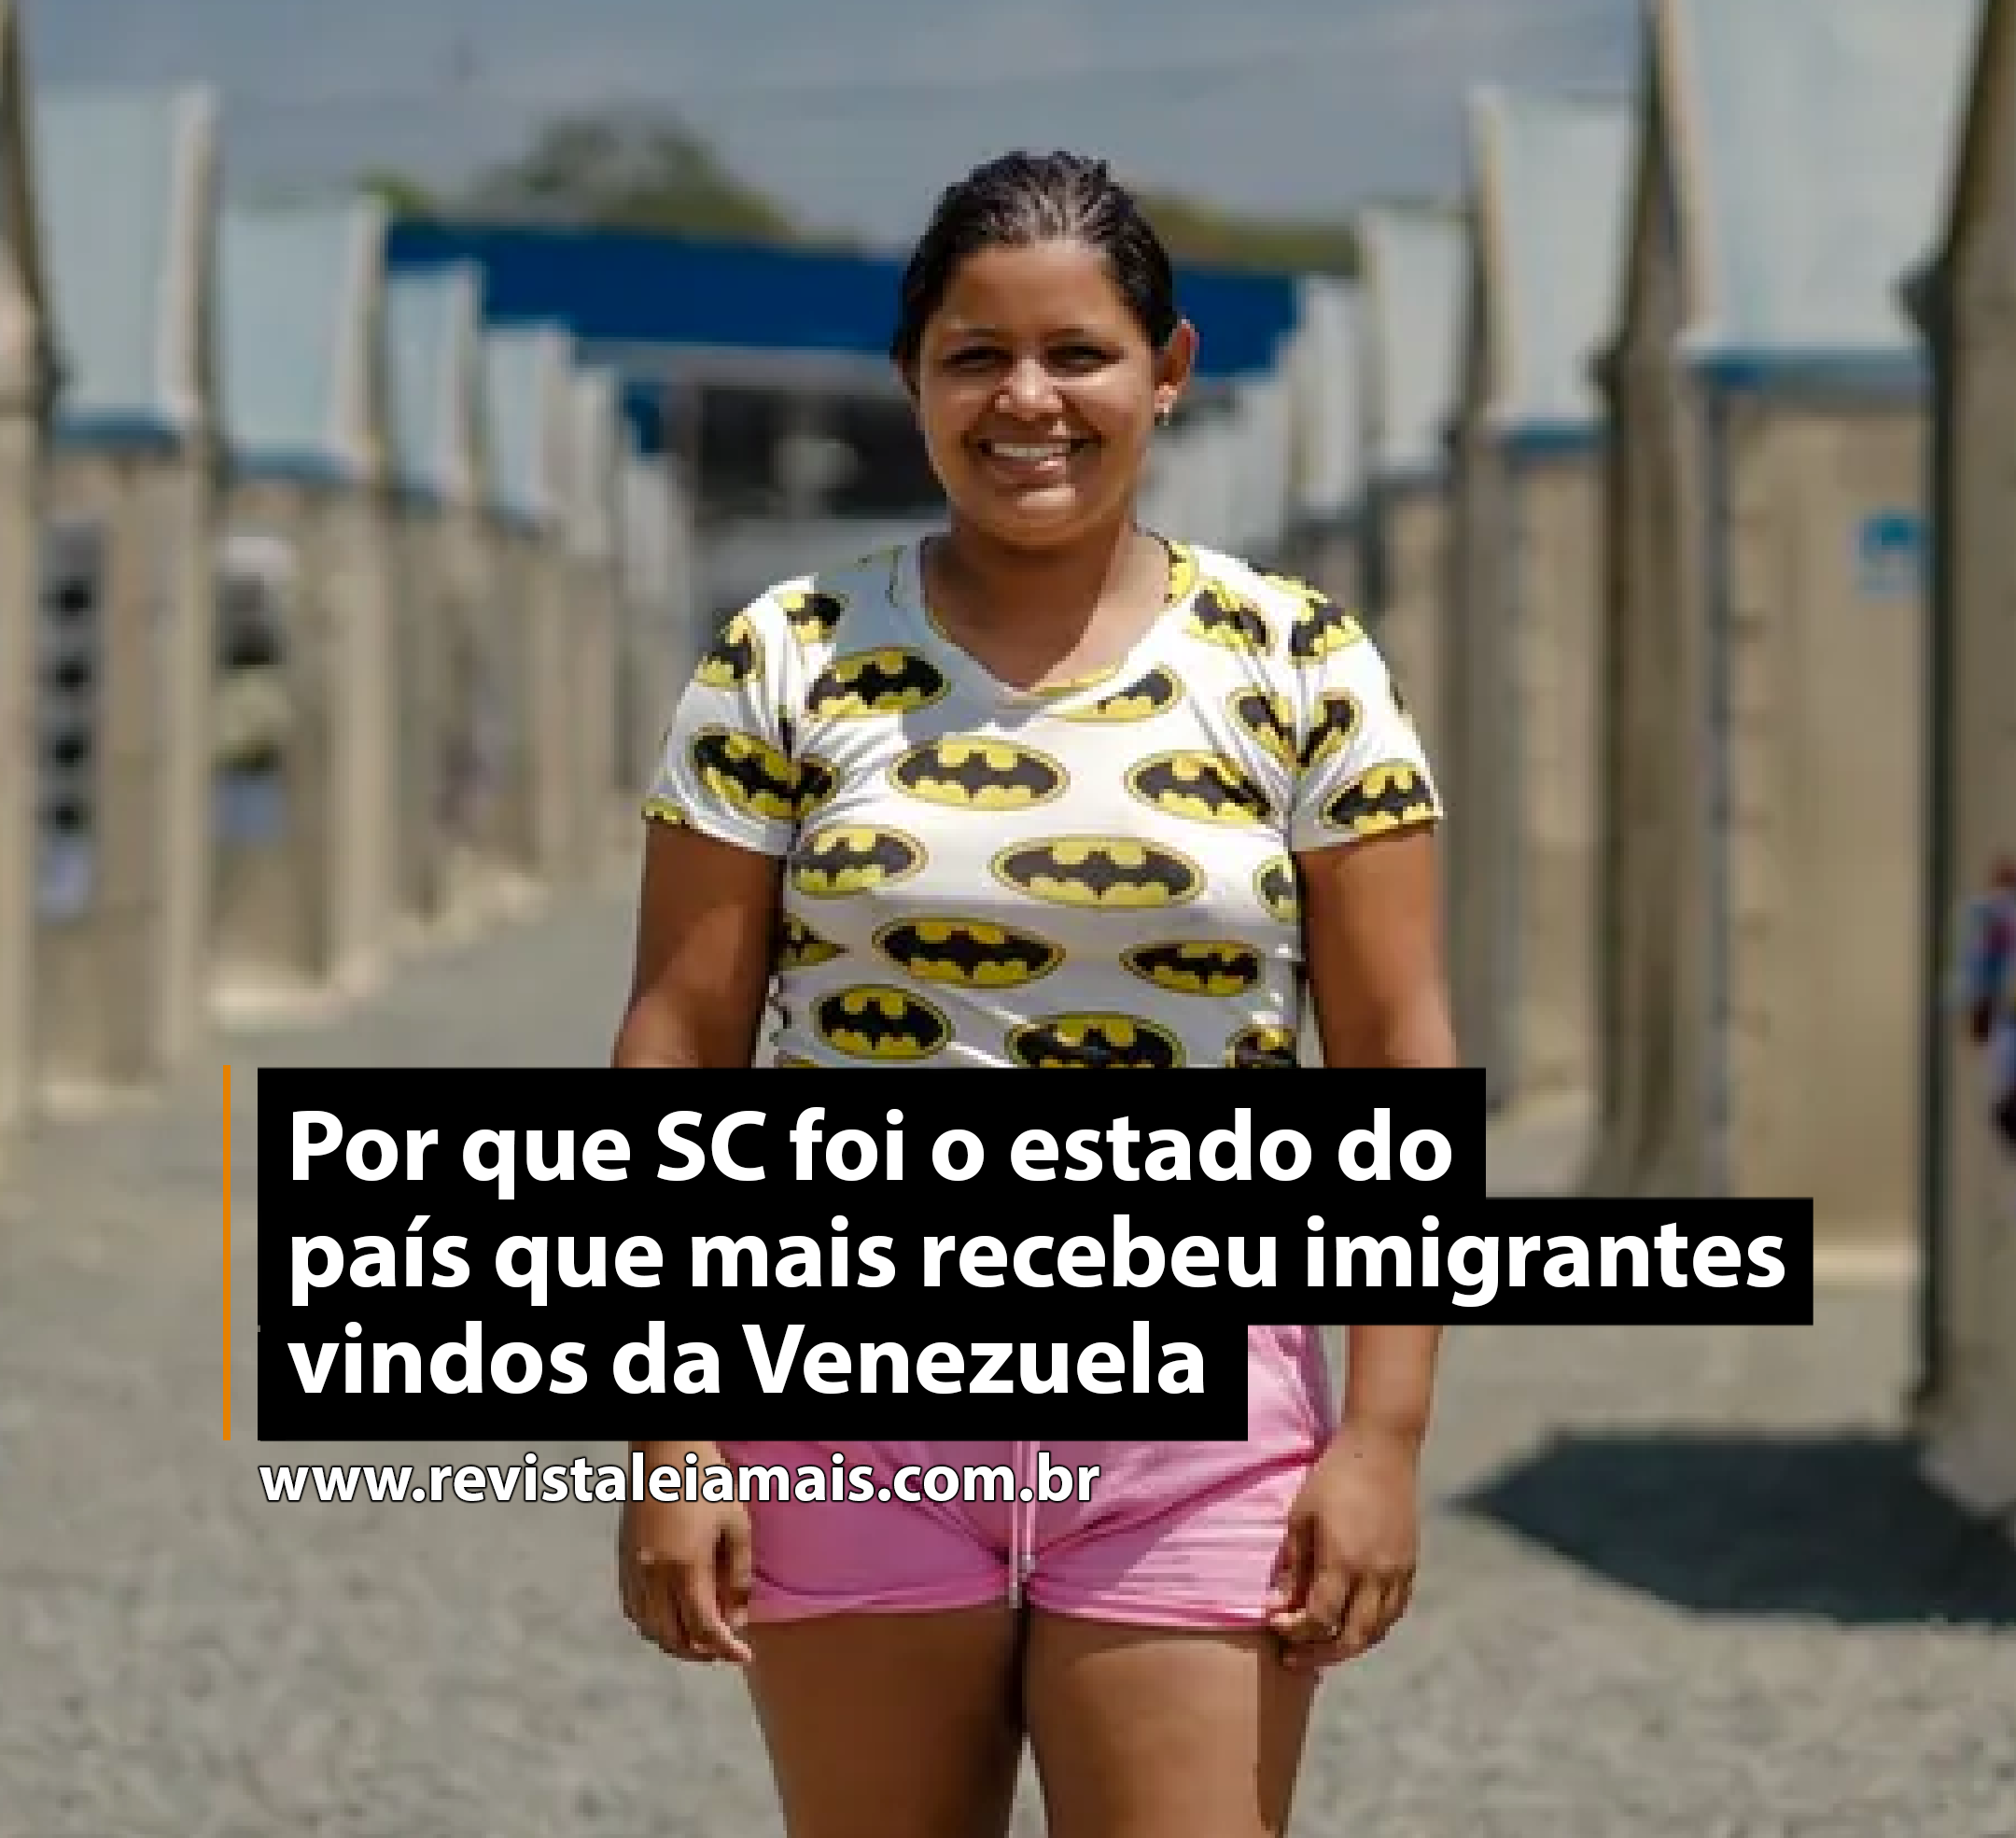 Por que SC foi o estado do país que mais recebeu imigrantes vindos da Venezuela